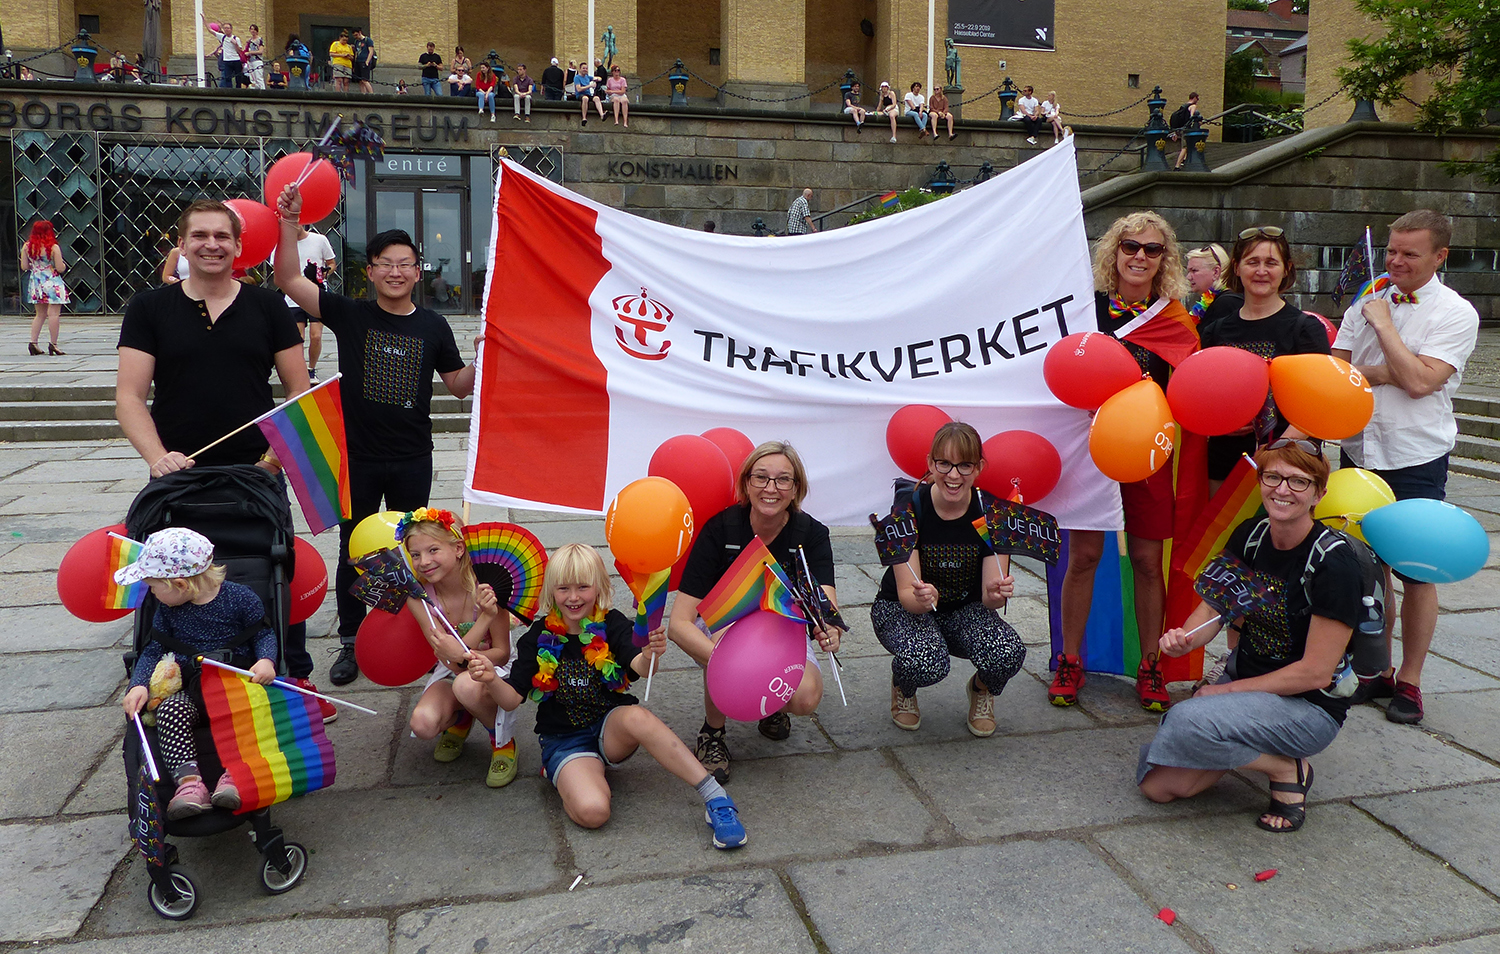 Bild: Trafikverkets gäng på Pride i Göteborg 2019.